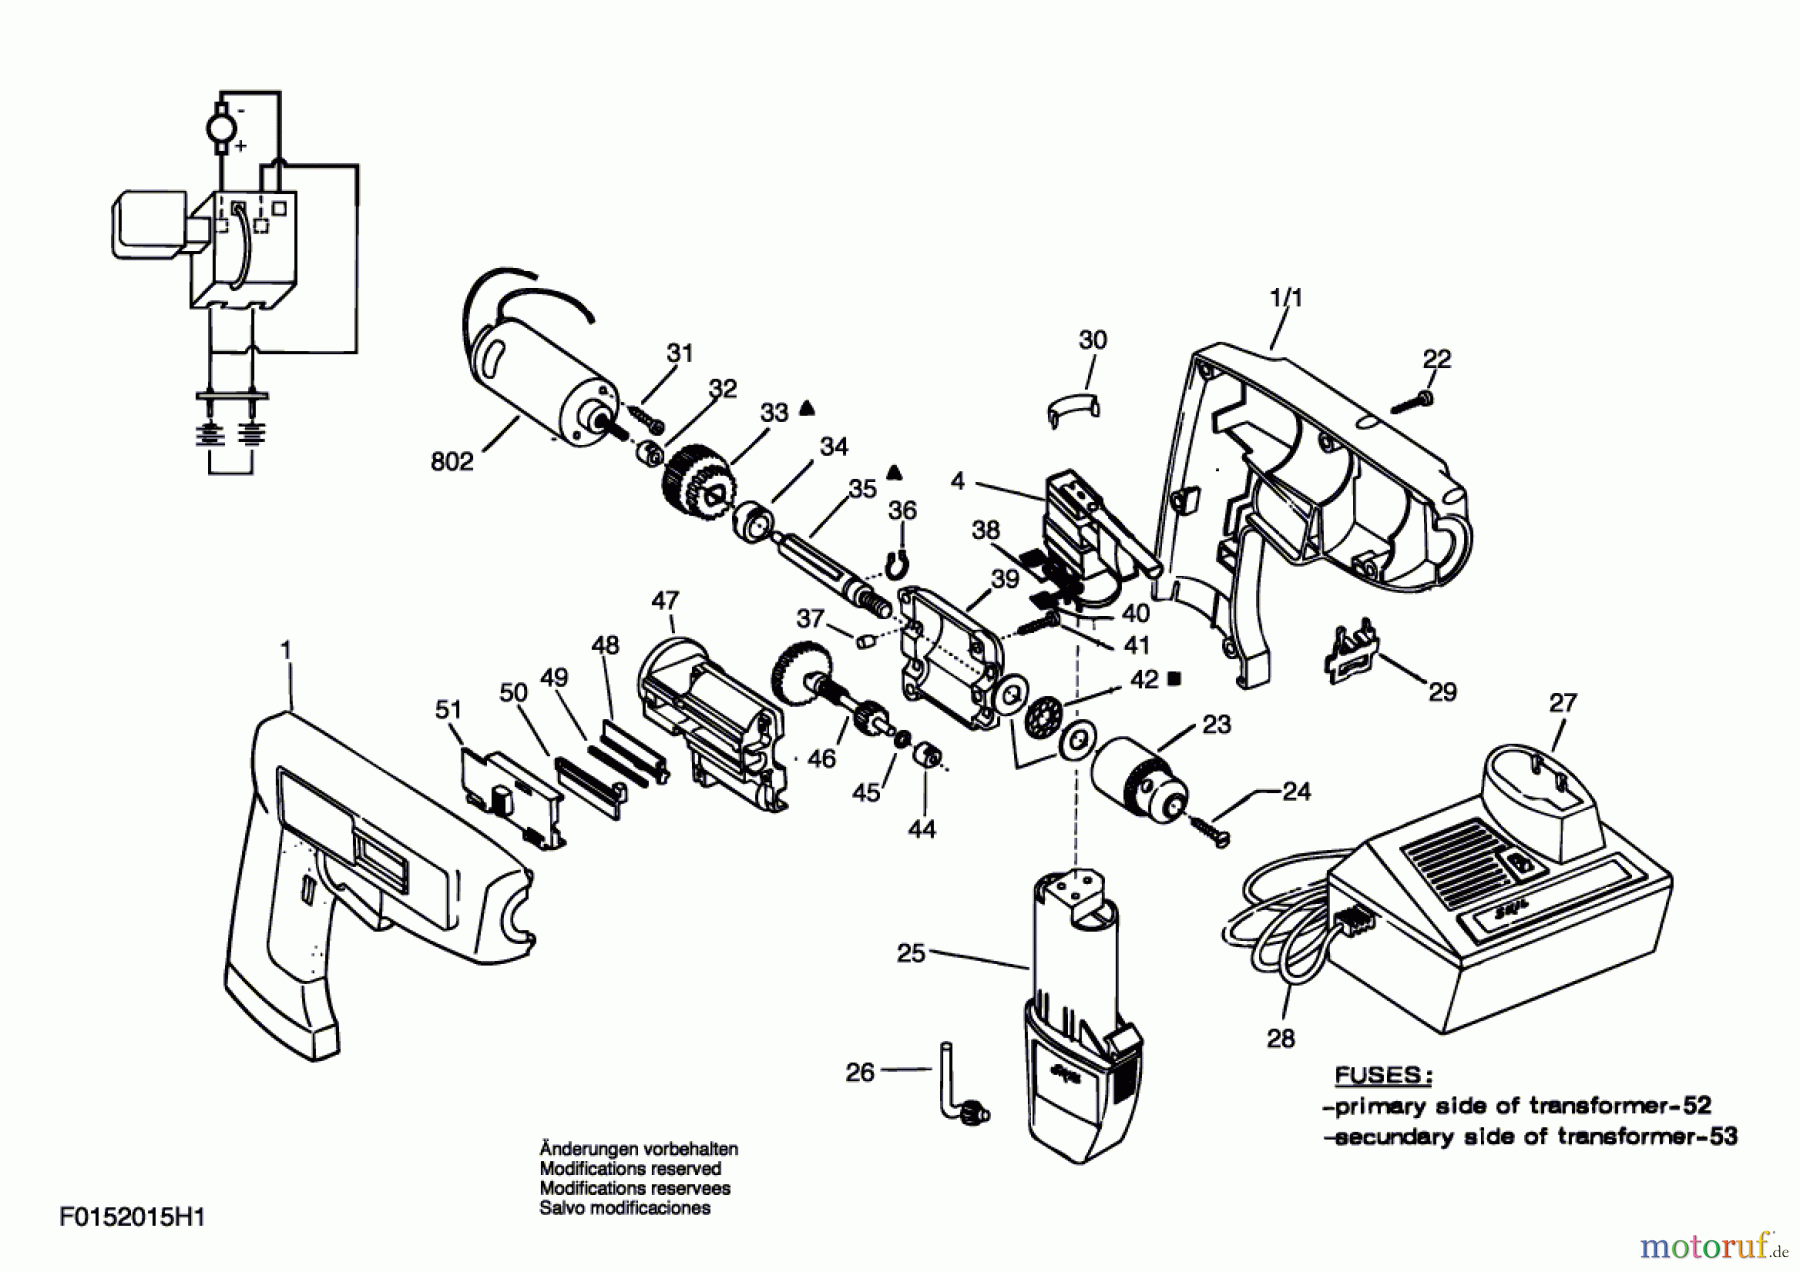  Bosch Akku Werkzeug Gw-Akku-Schrauber 2015 Seite 1